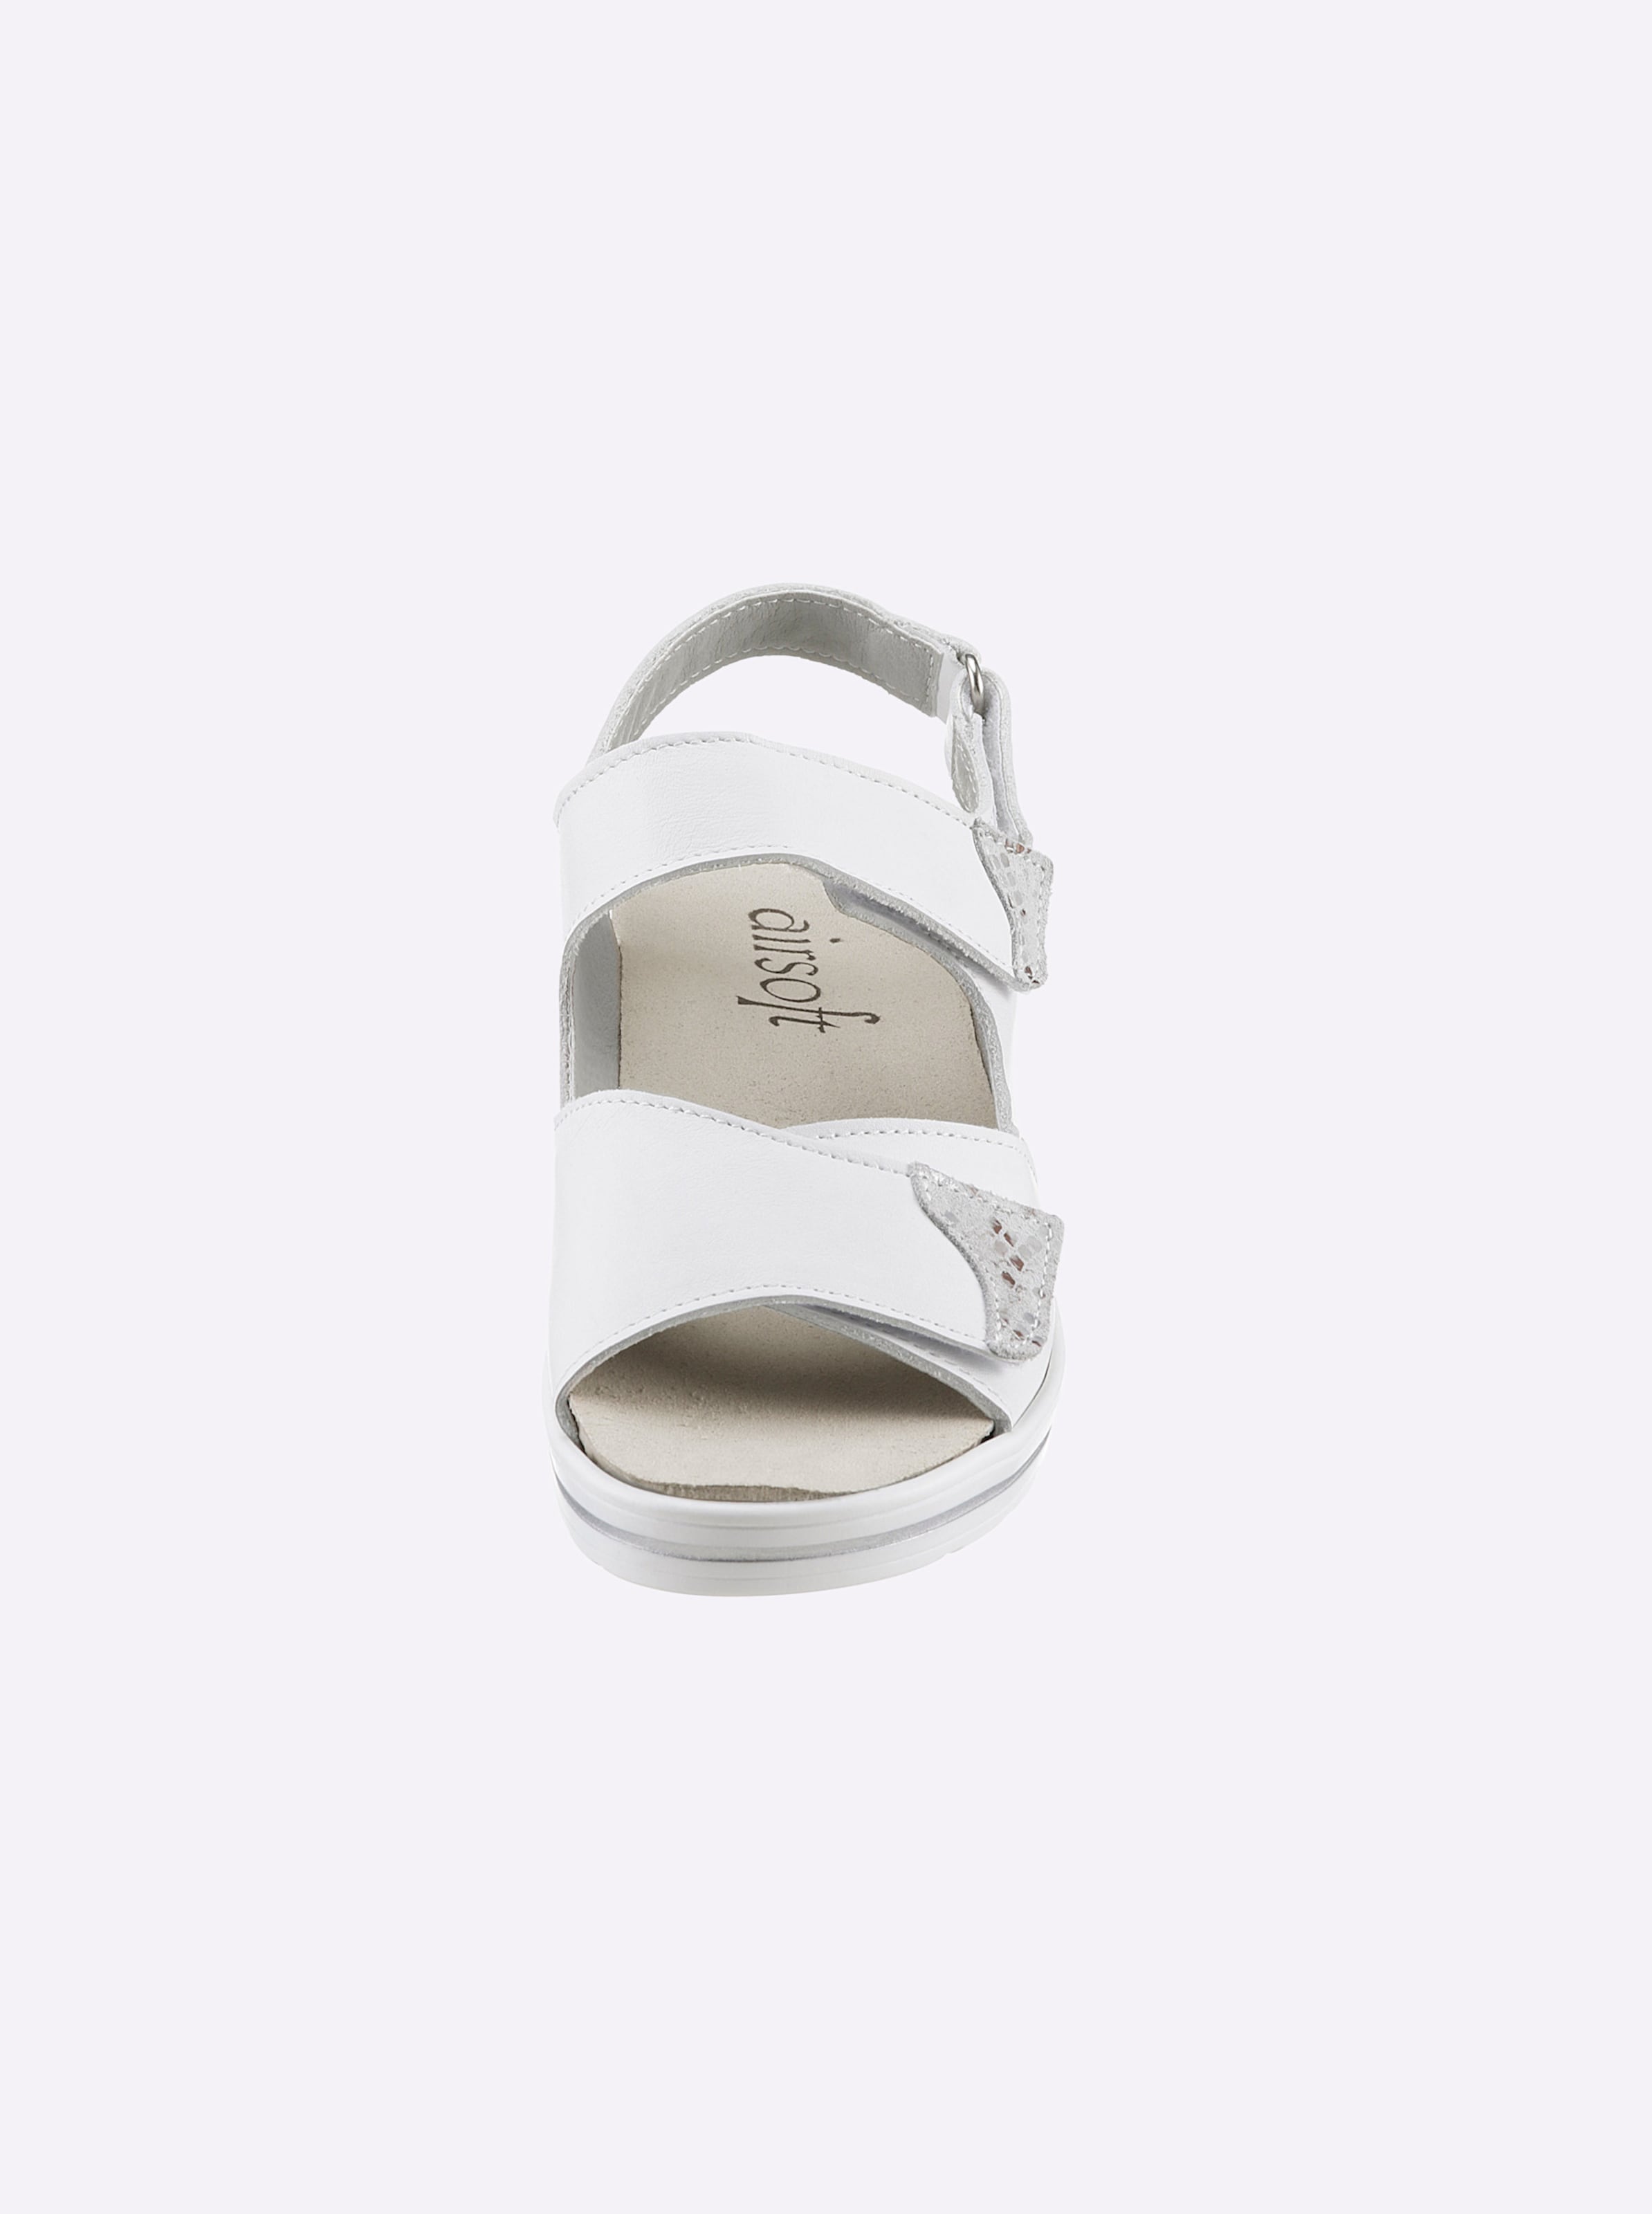 TTL to günstig Kaufen-Sandalette in weiß von airsoft comfort+. Sandalette in weiß von airsoft comfort+ <![CDATA[Wir stehen auf Komfort und eine tolle Optik – wie die Sandalette von airsoft comfort+ beweist. Farbe Weiß aus Glattleder, Farbe Marine aus Nubuk- und La